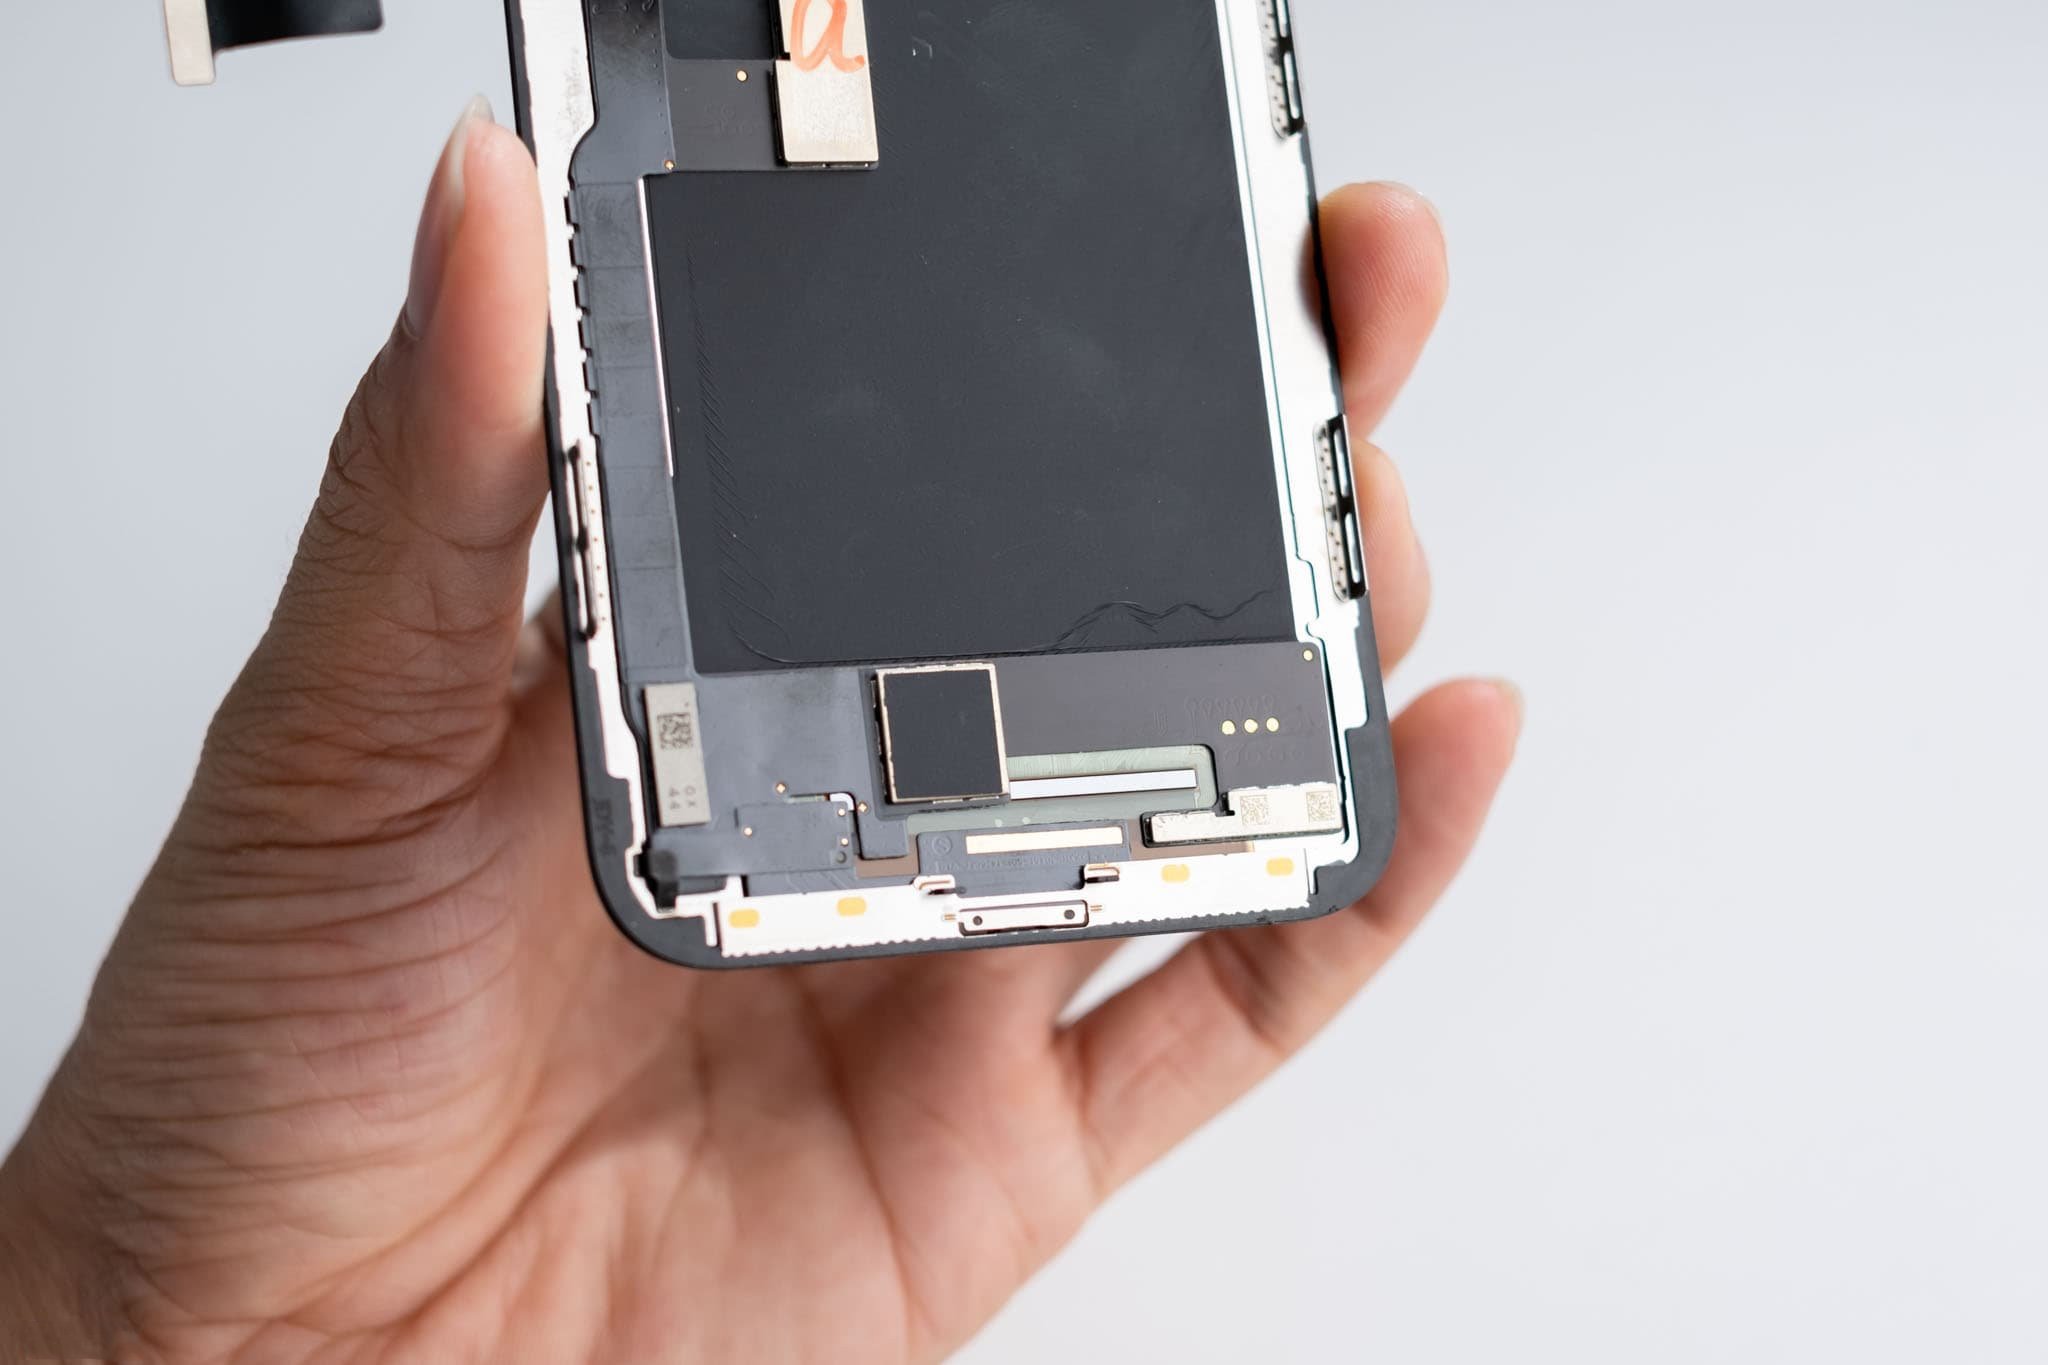 Cùng chúng tôi khám phá một cấp độ mới của trải nghiệm hình ảnh với màn hình Dura cho iPhone 11 Pro. Với công nghệ Soft OLED tiên tiến, sản phẩm này hứa hẹn đem lại cho bạn những trải nghiệm tuyệt vời nhất về chất lượng hình ảnh và hiệu suất.1. Chất Lượng Hình Ảnh Xuất Sắc:
Màn hình Dura cho iPhone 11 Pro sử dụng công nghệ Soft OLED, mang đến cho bạn một thế giới hình ảnh sống động và rực rỡ. Độ tương phản cực cao và màu sắc chân thực giúp mỗi chi tiết trở nên sống động, từ cảnh hoàng hôn tới hình ảnh đầy màu sắc của video và game.

2. Hiệu Suất Vượt Trội:
Với tốc độ làm mới cao, màn hình Dura không chỉ đảm bảo hình ảnh mượt mà mà còn giảm thiểu hiện tượng giật lag khi chơi game hay xem video độ phân giải cao. Điều này giúp tối ưu hóa trải nghiệm người dùng và làm cho mọi hoạt động trên điện thoại trở nên mượt mà hơn.

3. Bảo Vệ Mắt:
Công nghệ Soft OLED không chỉ tạo nên hình ảnh đẹp mắt mà còn giúp bảo vệ đôi mắt của bạn. Màn hình này được thiết kế để giảm ánh sáng xanh, giảm mệt mỏi và đảm bảo rằng bạn có thể sử dụng điện thoại trong thời gian dài mà không làm tổn thương đến thị lực.

4. Thiết Kế Mỏng Nhẹ:
Màn hình Dura không chỉ nổi bật với chất lượng hình ảnh mà còn với thiết kế siêu mỏng nhẹ. Điều này không chỉ làm cho chiếc iPhone 11 Pro của bạn trở nên thời trang hơn mà còn tối ưu hóa trọng lượng, mang đến sự thuận tiện cho người dùng di động.

5. Độ Bền Cao:
Tên gọi "Dura" không phải là ngẫu nhiên. Màn hình này được chế tạo với các vật liệu chất lượng cao, chịu được va đập và chống xước, giúp bảo vệ chiếc điện thoại yêu quý của bạn khỏi những tình huống không may.

Kết Luận:
Màn hình Dura cho iPhone 11 Pro (Soft OLED) là một bước tiến đột phá trong công nghệ màn hình di động. Được thiết kế để mang lại trải nghiệm hình ảnh và hiệu suất tốt nhất, sản phẩm này chắc chắn sẽ làm hài lòng người dùng khó tính nhất. Hãy cùng trải nghiệm và khám phá sự khác biệt mà màn hình Dura mang lại cho cuộc sống kỹ thuật số của bạn!

Cùng chúng tôi khám phá một cấp độ mới của trải nghiệm hình ảnh với màn hình Dura cho iPhone 11 Pro. Với công nghệ Soft OLED tiên tiến, sản phẩm này hứa hẹn đem lại cho bạn những trải nghiệm tuyệt vời nhất về chất lượng hình ảnh và hiệu suất.

1. Chất Lượng Hình Ảnh Xuất Sắc:
Màn hình Dura cho iPhone 11 Pro sử dụng công nghệ Soft OLED, mang đến cho bạn một thế giới hình ảnh sống động và rực rỡ. Độ tương phản cực cao và màu sắc chân thực giúp mỗi chi tiết trở nên sống động, từ cảnh hoàng hôn tới hình ảnh đầy màu sắc của video và game.

2. Hiệu Suất Vượt Trội:
Với tốc độ làm mới cao, màn hình Dura không chỉ đảm bảo hình ảnh mượt mà mà còn giảm thiểu hiện tượng giật lag khi chơi game hay xem video độ phân giải cao. Điều này giúp tối ưu hóa trải nghiệm người dùng và làm cho mọi hoạt động trên điện thoại trở nên mượt mà hơn.

3. Bảo Vệ Mắt:
Công nghệ Soft OLED không chỉ tạo nên hình ảnh đẹp mắt mà còn giúp bảo vệ đôi mắt của bạn. Màn hình này được thiết kế để giảm ánh sáng xanh, giảm mệt mỏi và đảm bảo rằng bạn có thể sử dụng điện thoại trong thời gian dài mà không làm tổn thương đến thị lực.

4. Thiết Kế Mỏng Nhẹ:
Màn hình Dura không chỉ nổi bật với chất lượng hình ảnh mà còn với thiết kế siêu mỏng nhẹ. Điều này không chỉ làm cho chiếc iPhone 11 Pro của bạn trở nên thời trang hơn mà còn tối ưu hóa trọng lượng, mang đến sự thuận tiện cho người dùng di động.

5. Độ Bền Cao:
Tên gọi "Dura" không phải là ngẫu nhiên. Màn hình này được chế tạo với các vật liệu chất lượng cao, chịu được va đập và chống xước, giúp bảo vệ chiếc điện thoại yêu quý của bạn khỏi những tình huống không may.

Kết Luận:
Màn hình Dura cho iPhone 11 Pro (Soft OLED) là một bước tiến đột phá trong công nghệ màn hình di động. Được thiết kế để mang lại trải nghiệm hình ảnh và hiệu suất tốt nhất, sản phẩm này chắc chắn sẽ làm hài lòng người dùng khó tính nhất. Hãy cùng trải nghiệm và khám phá sự khác biệt mà màn hình Dura mang lại cho cuộc sống kỹ thuật số của bạn!

MÀN HÌNH DURA IPHONE 11 PRO (SOFT OLED)